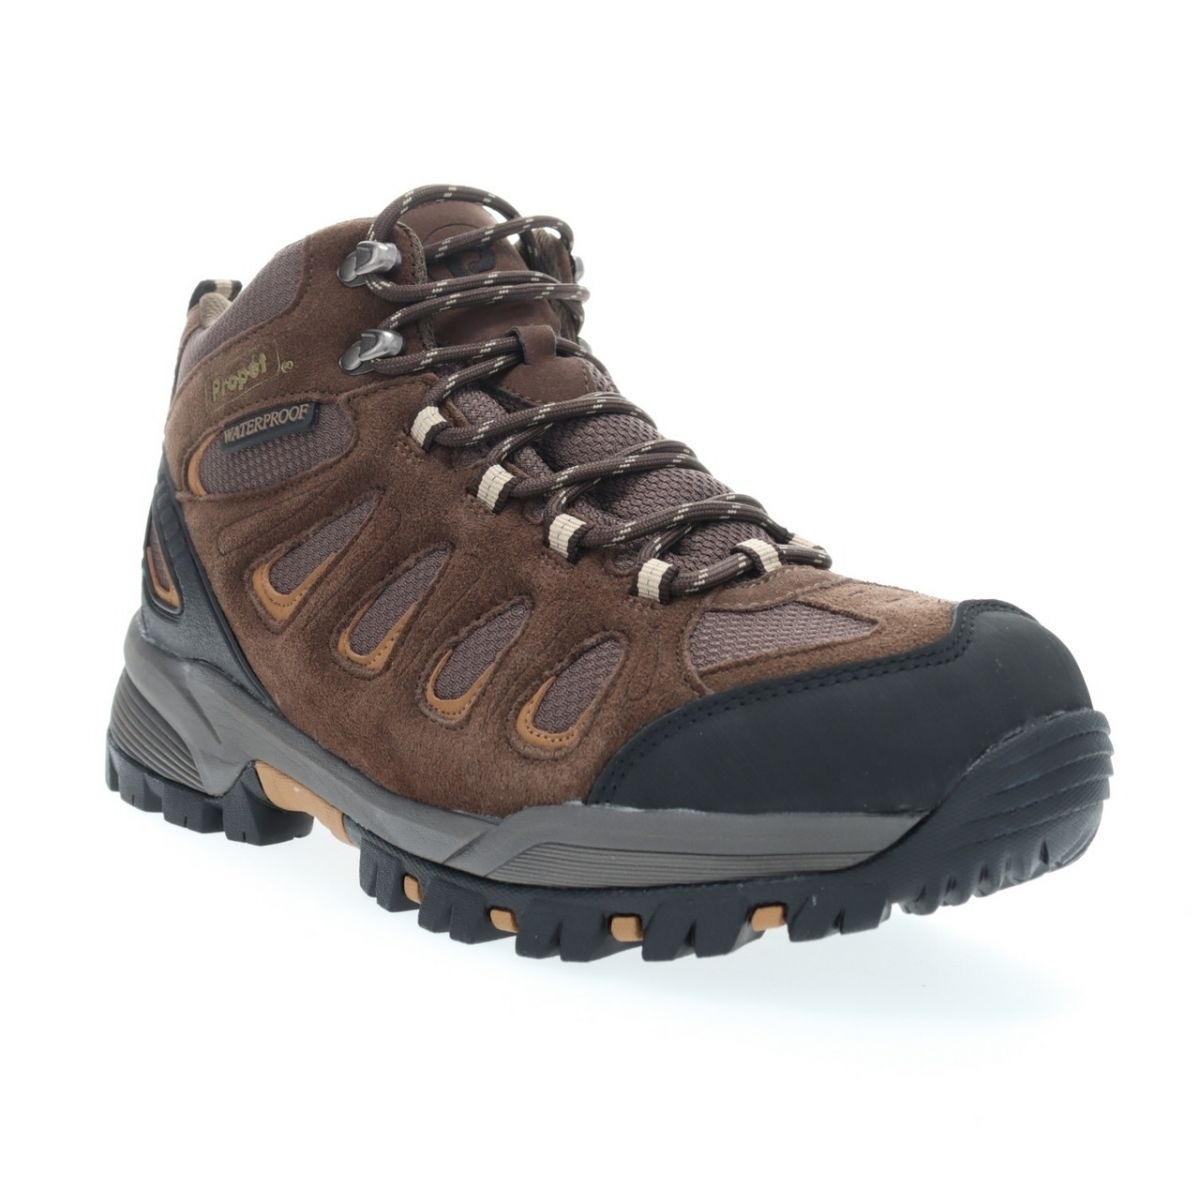 Propet Men's Ridge Walker Hiking Boot Brown - M3599BR 8 XX US Men BROWN - BROWN, 11.5